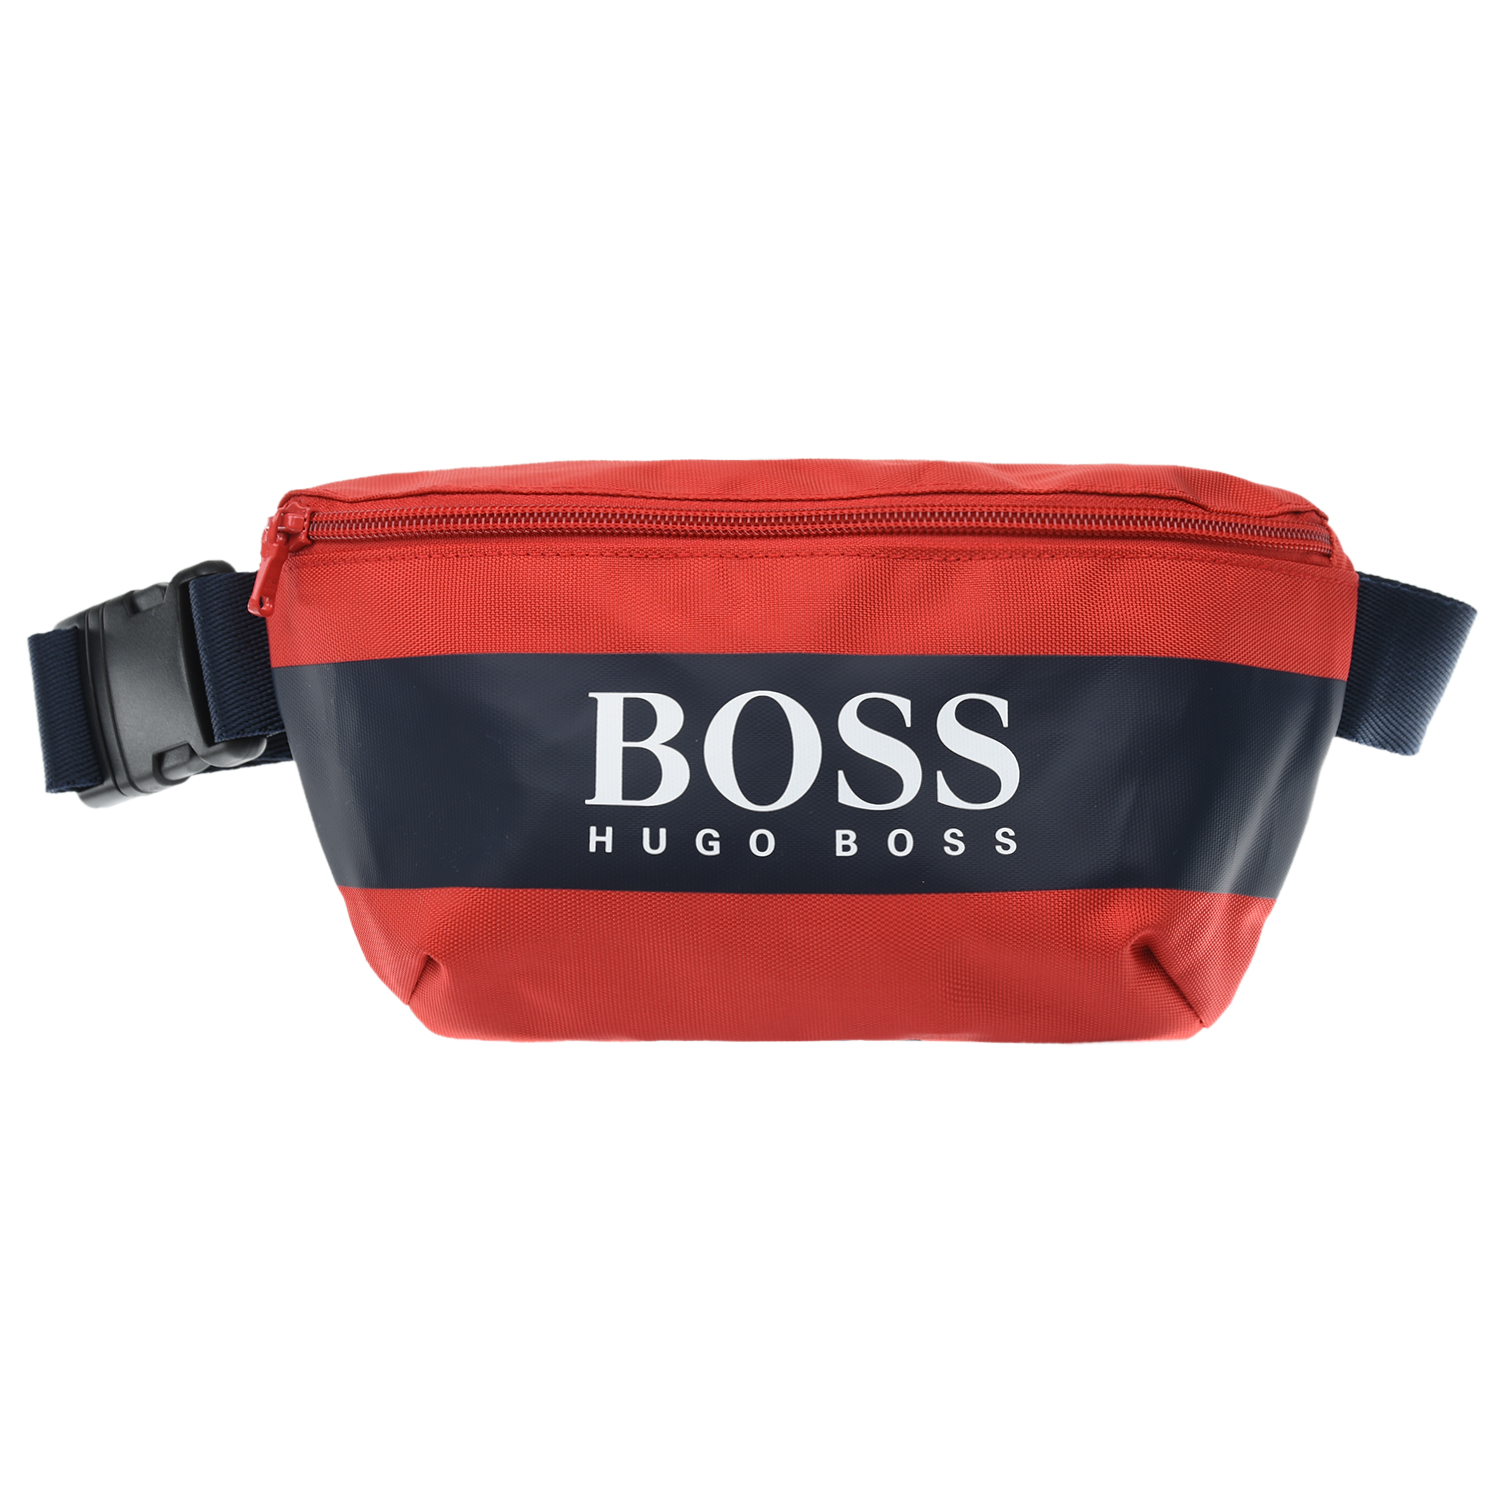 Красная сумка-пояс с логотипом, 25x13x4 см Hugo Boss детская, размер unica, цвет красный - фото 1